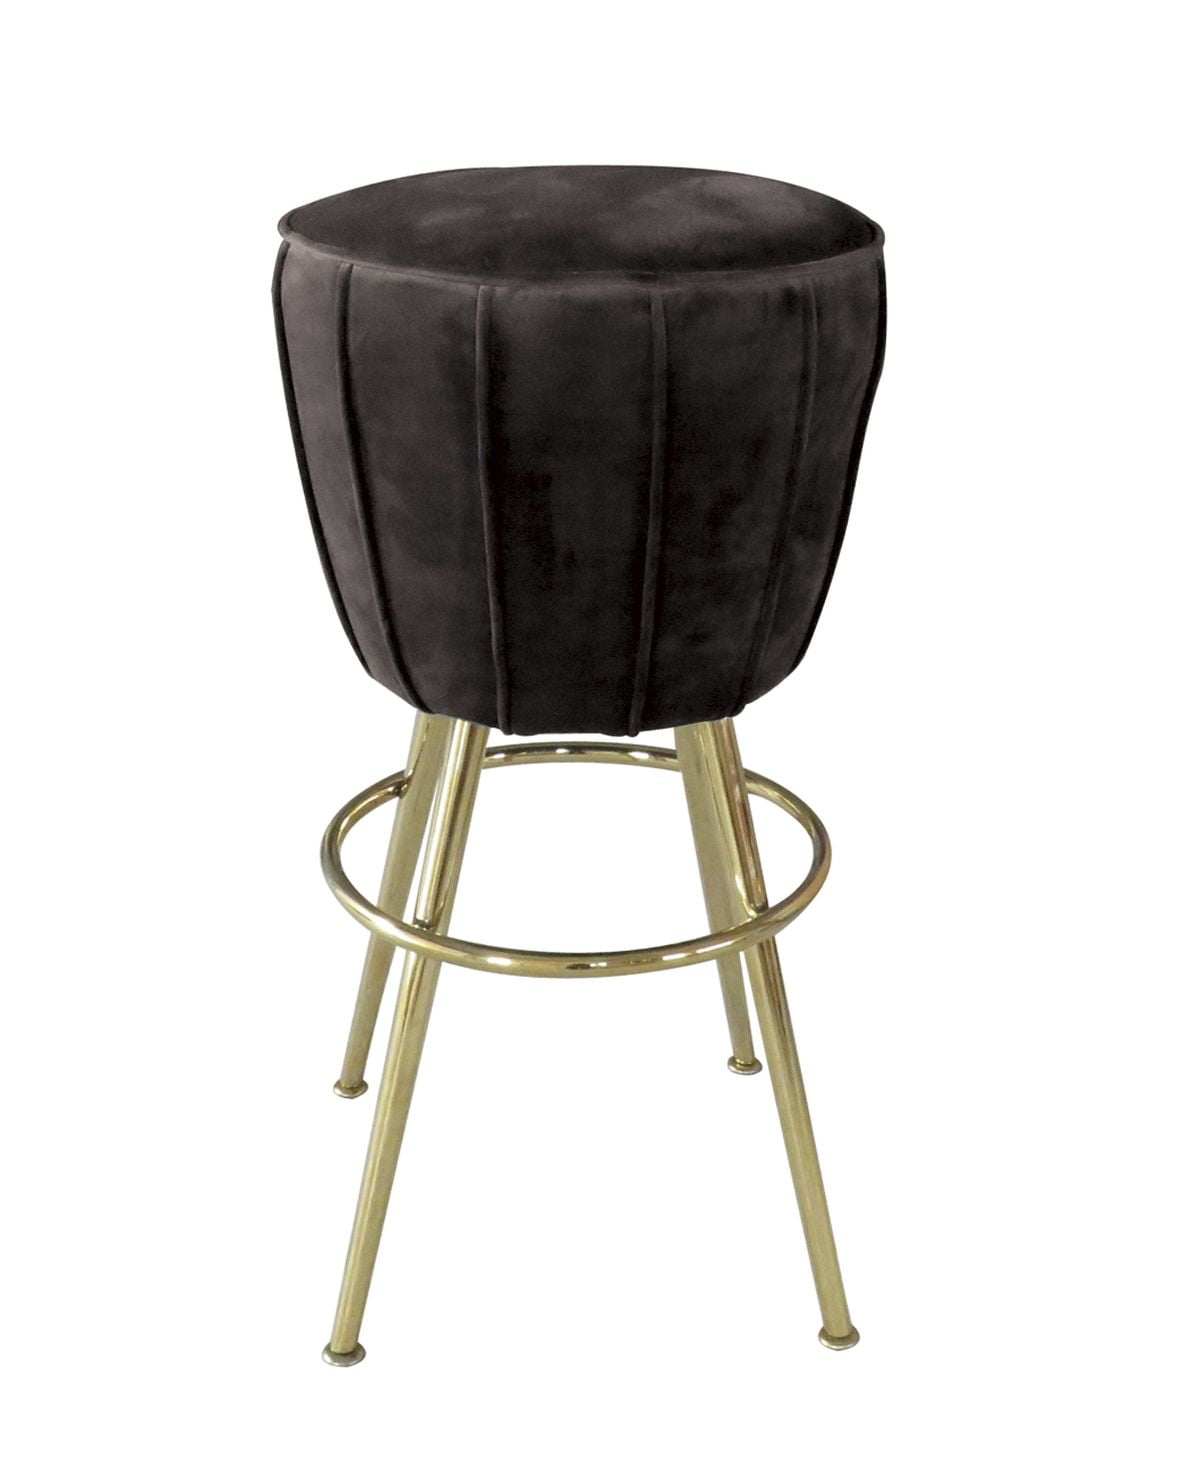 Marcello Vanetti Krzesło stołek barowy nowoczesny złote nogi czarny welur Sketch 46/46/73 cm C0309-1D Black Vel